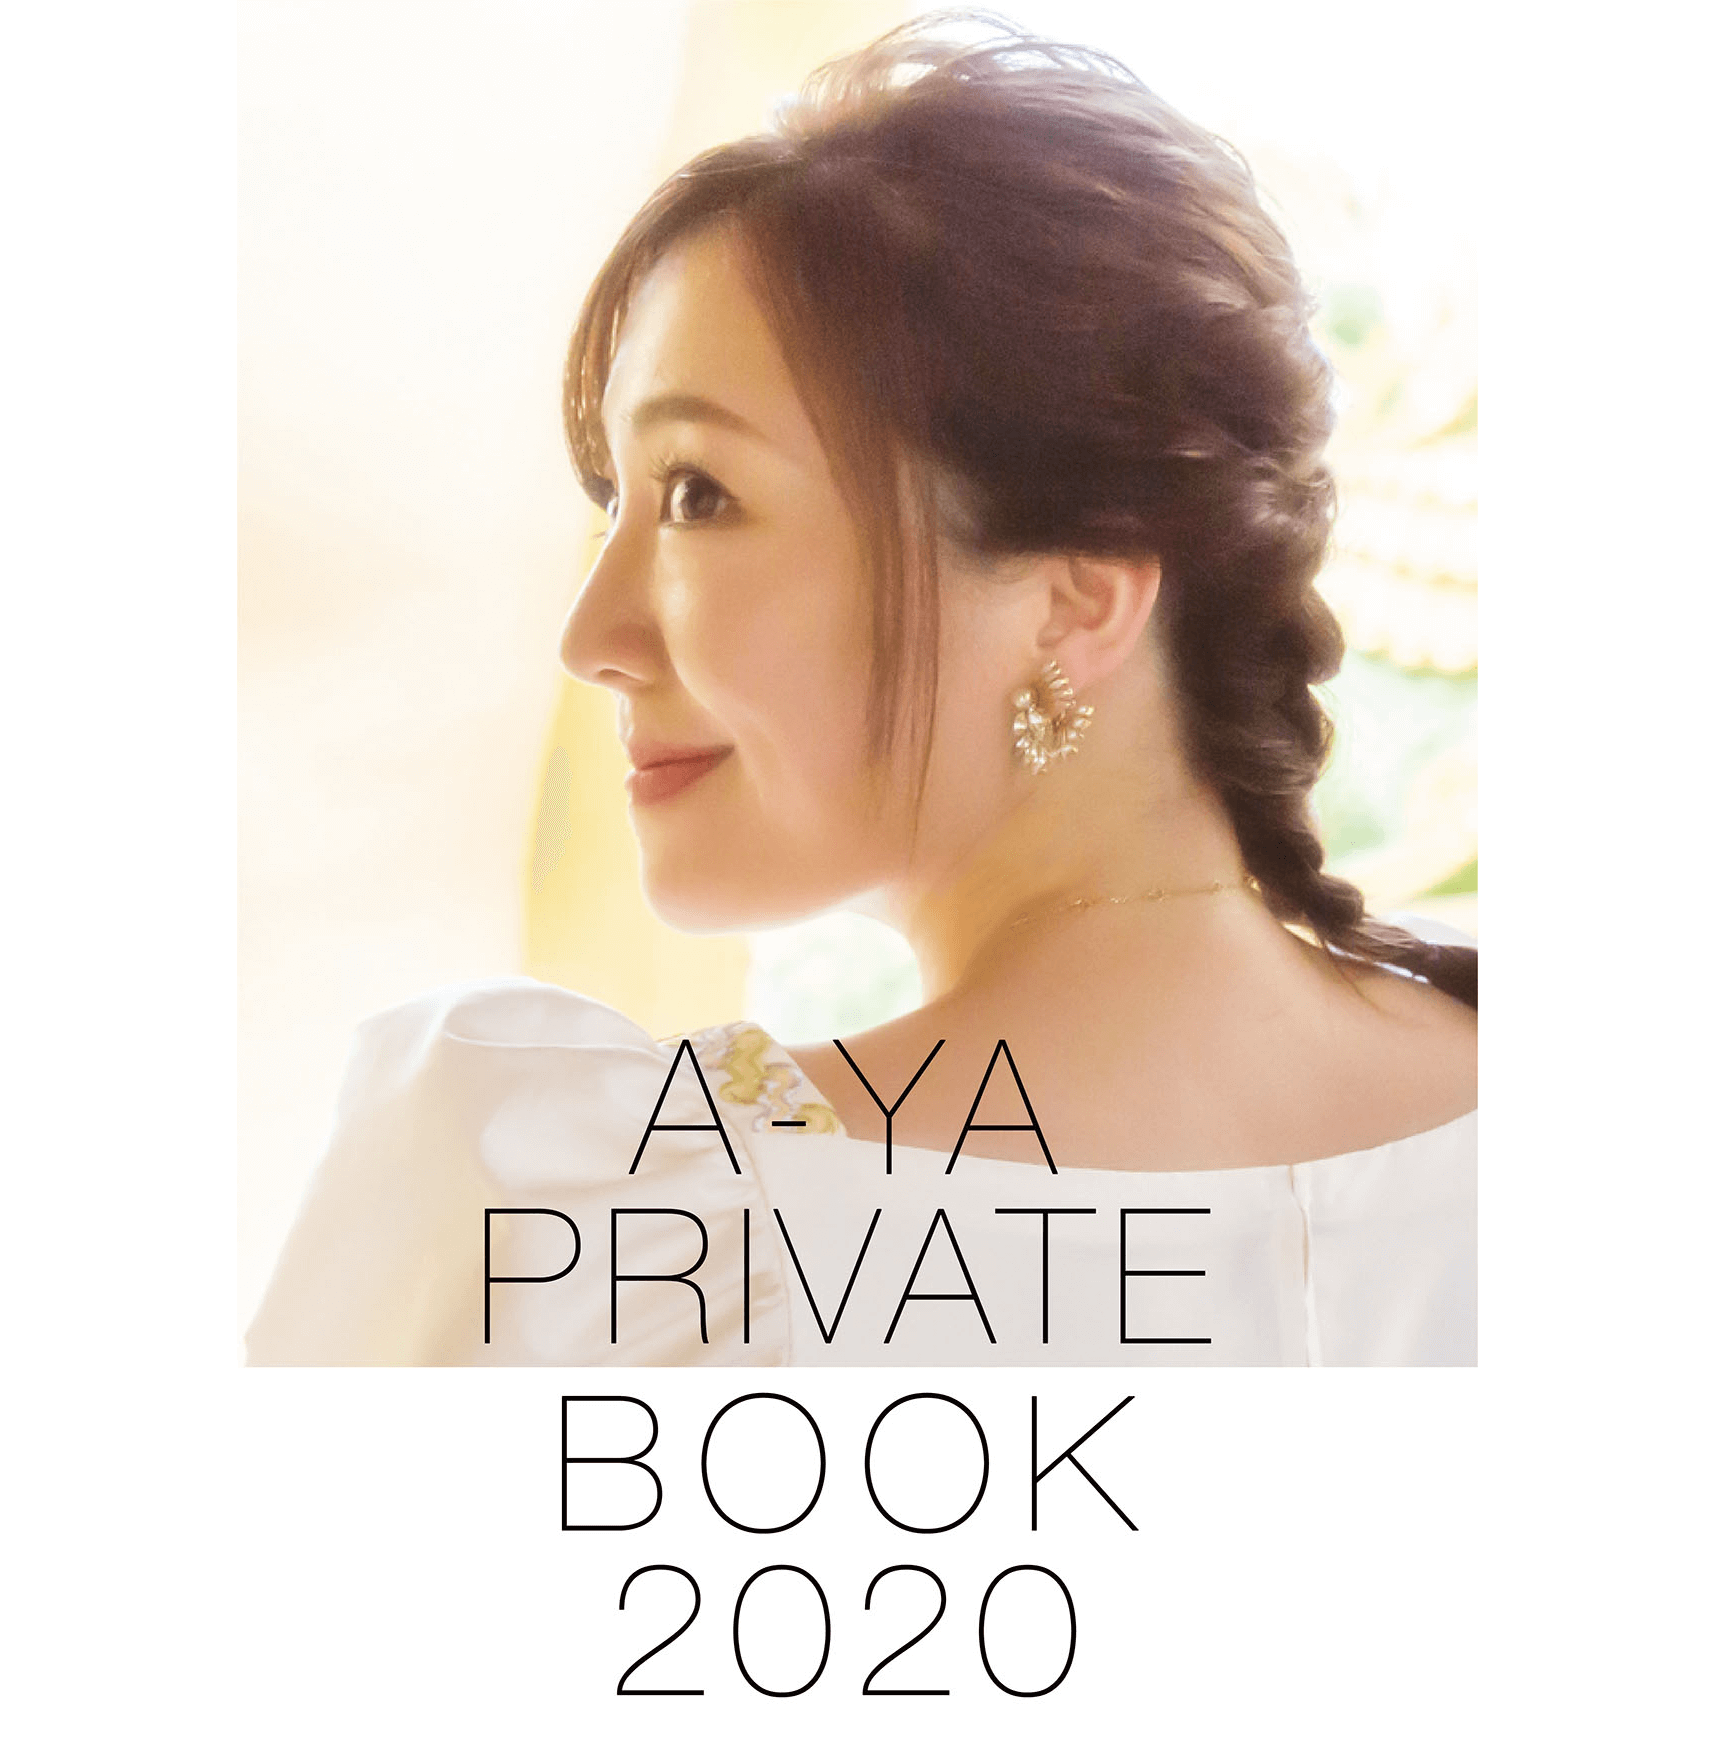 A-YA PRIVATE BOOK 2020